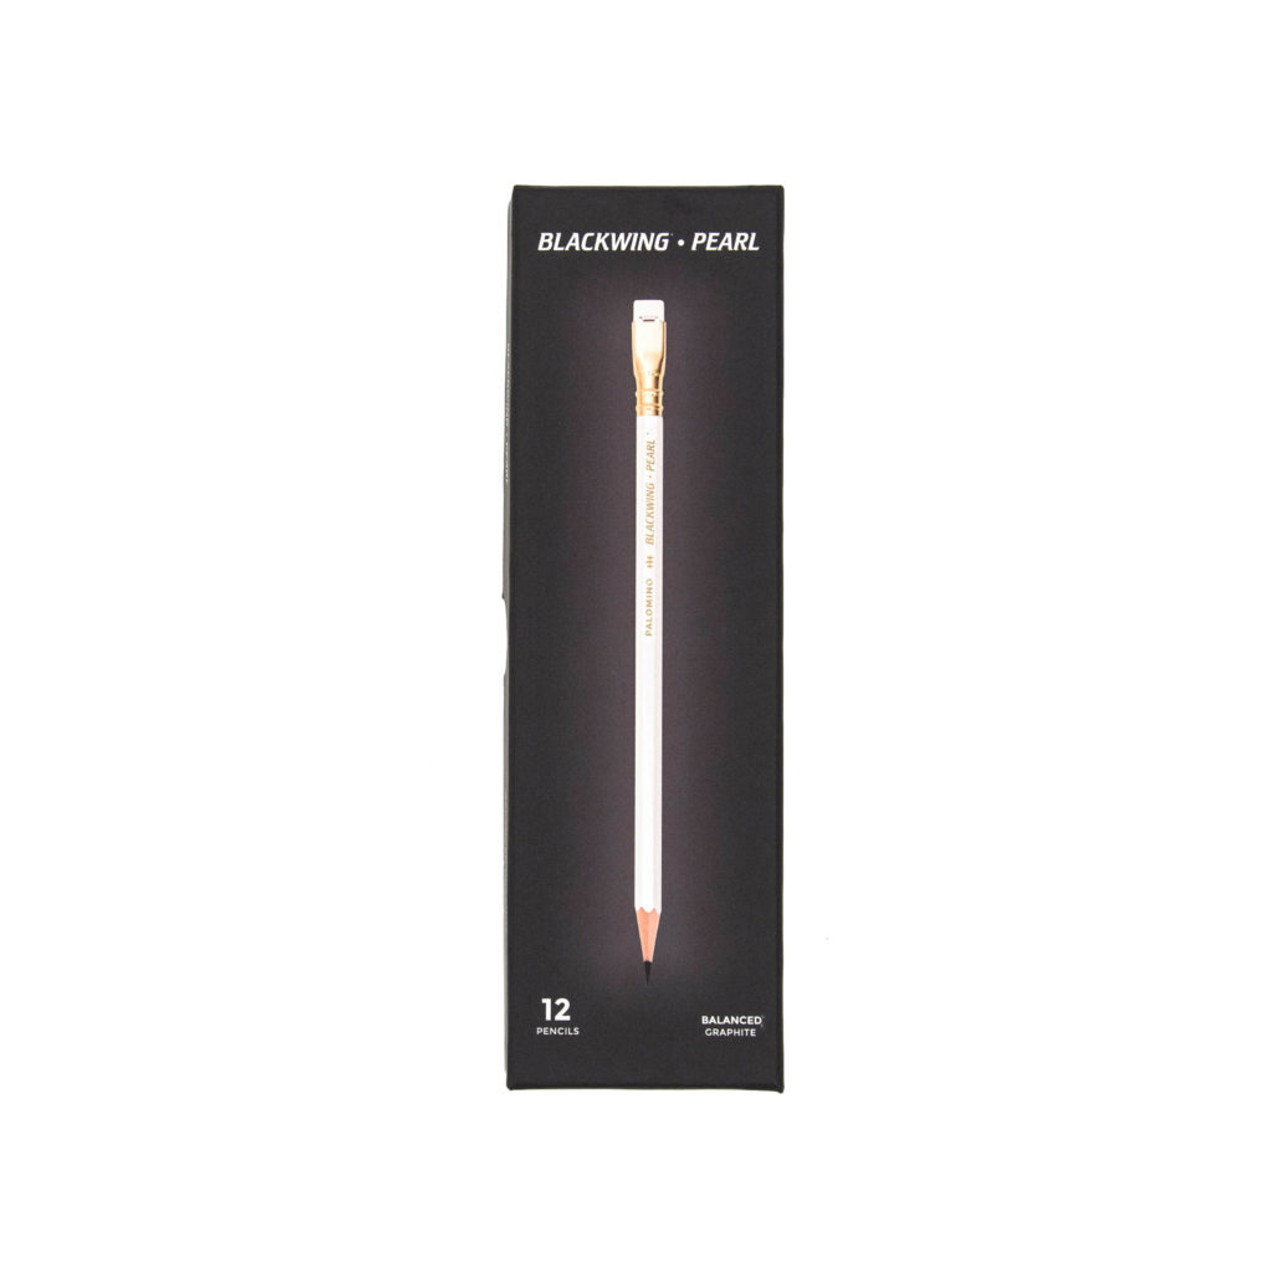 Blackwing Pearl Pencils, Balanced Graphite, 12-Pack - Bindertek